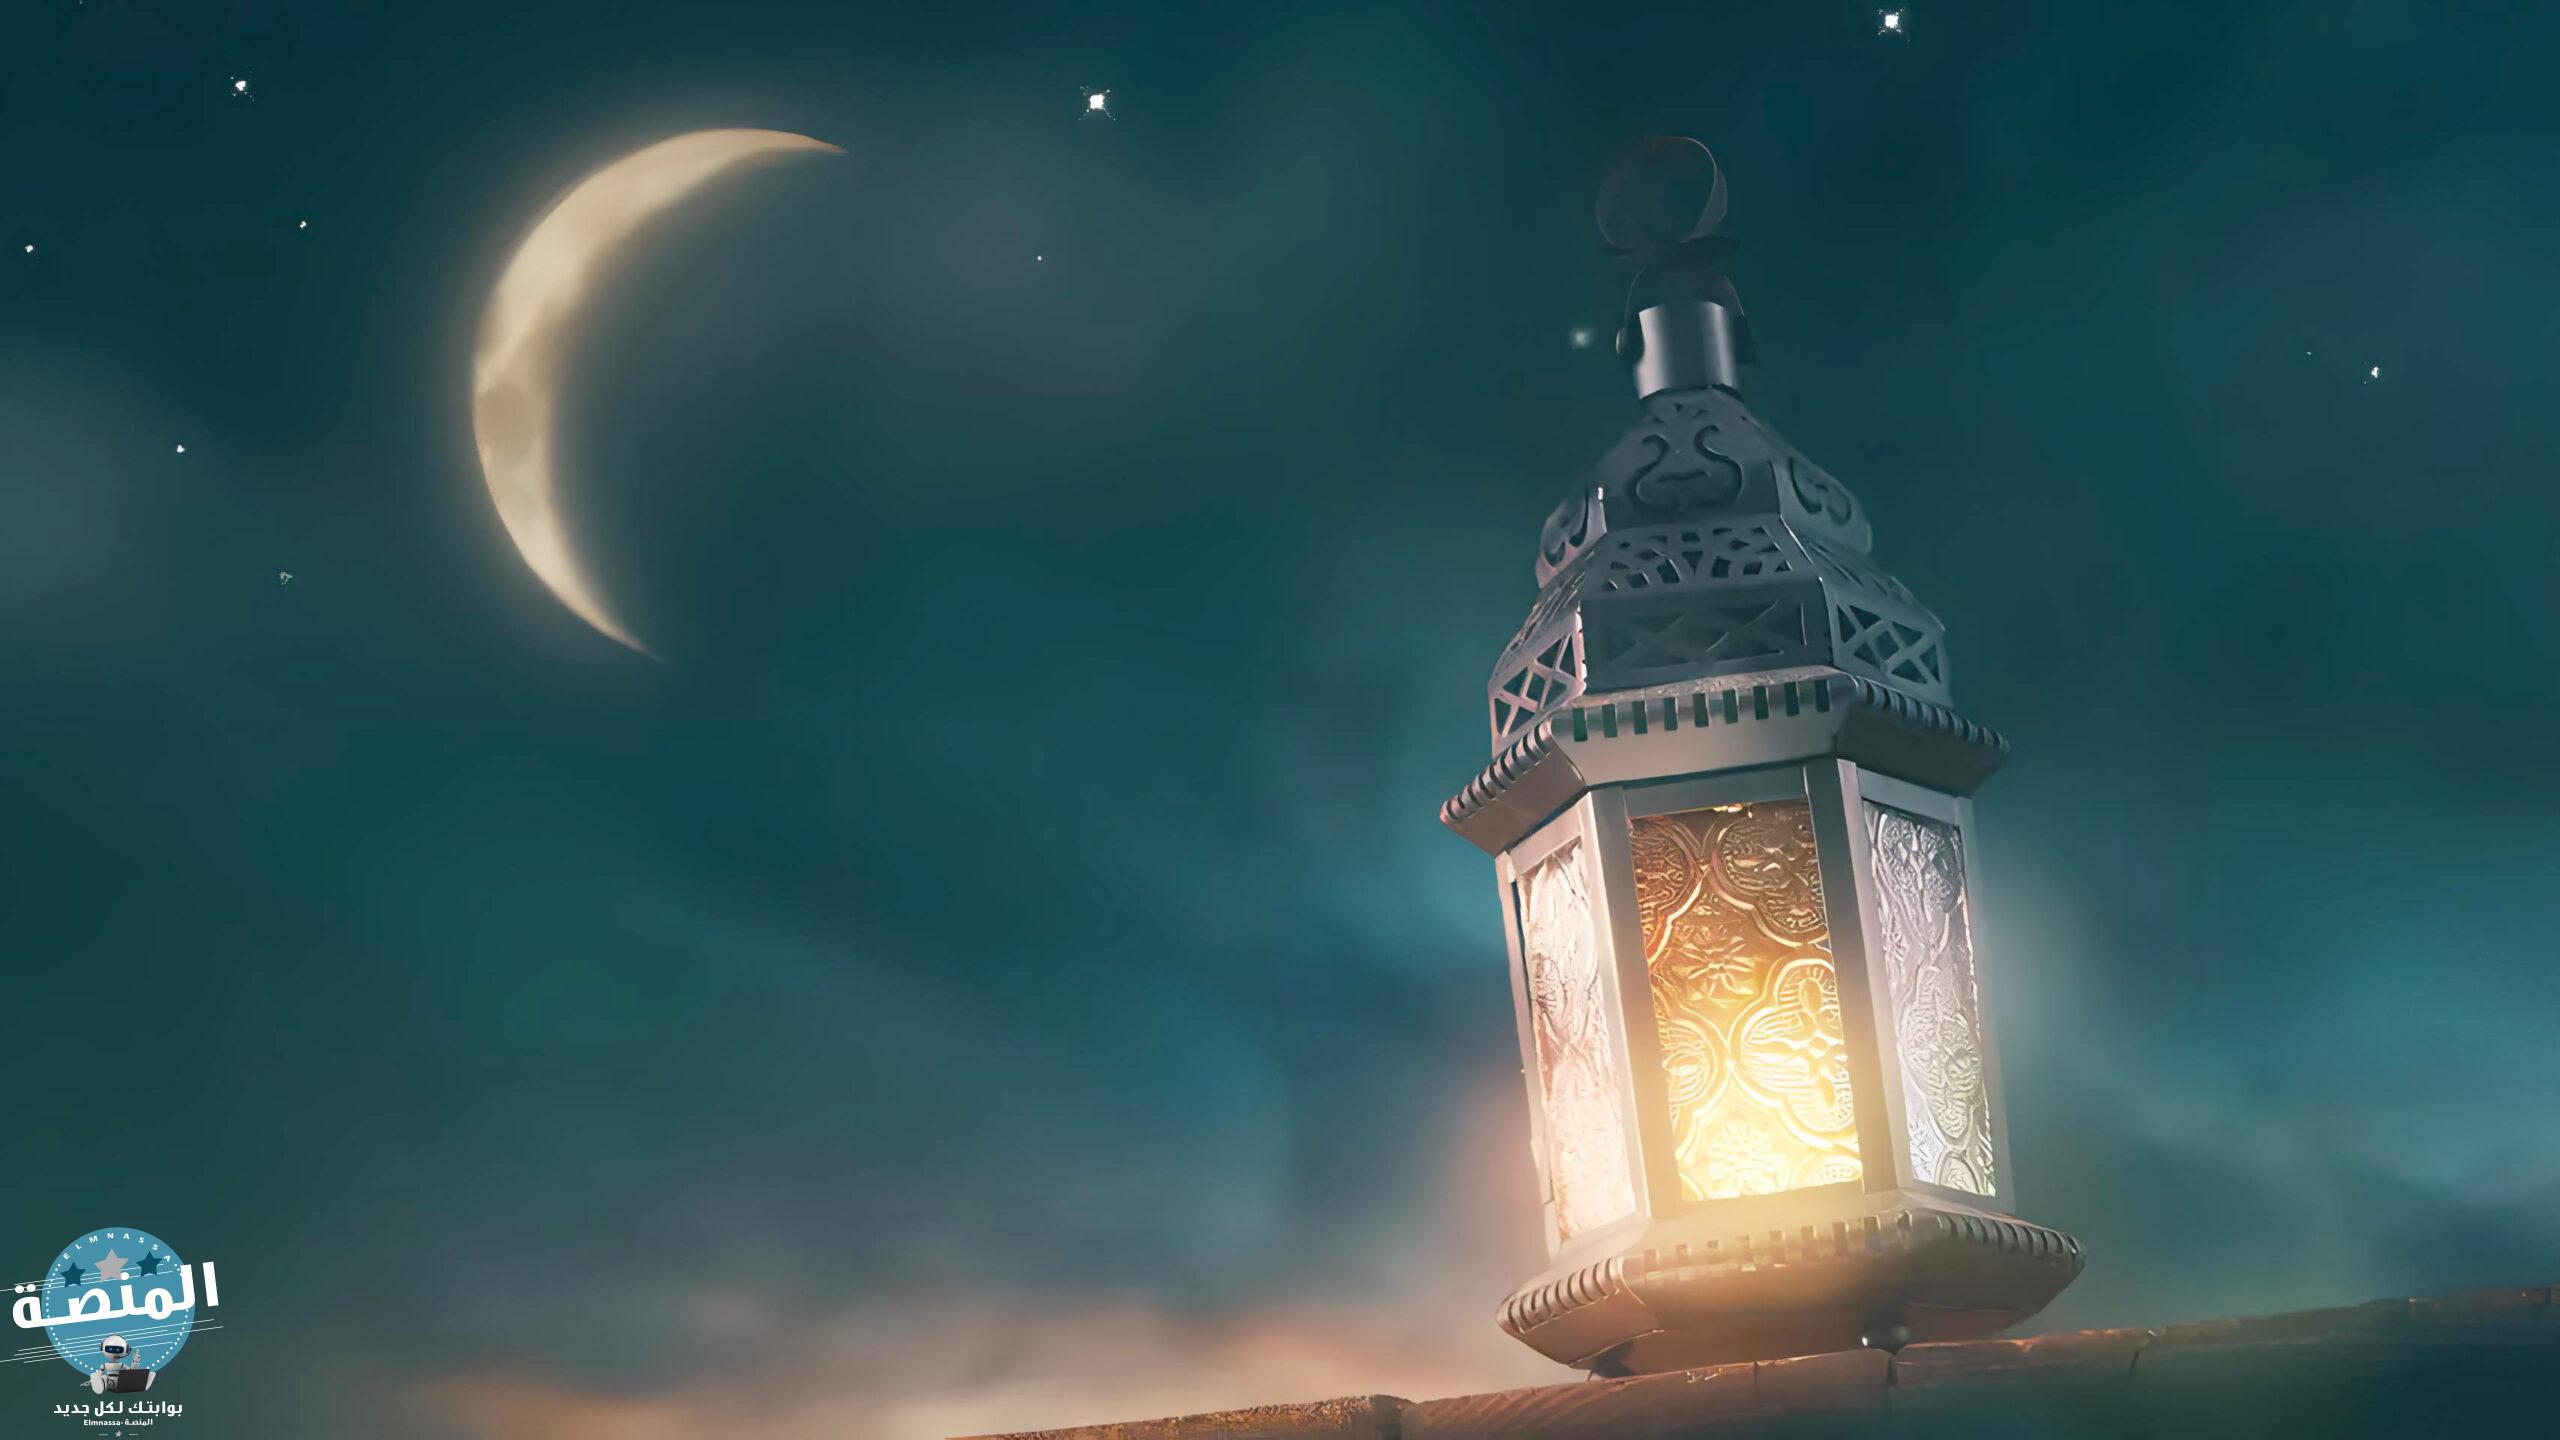 حديث أن الله يعتق في اخر ليلة من رمضان